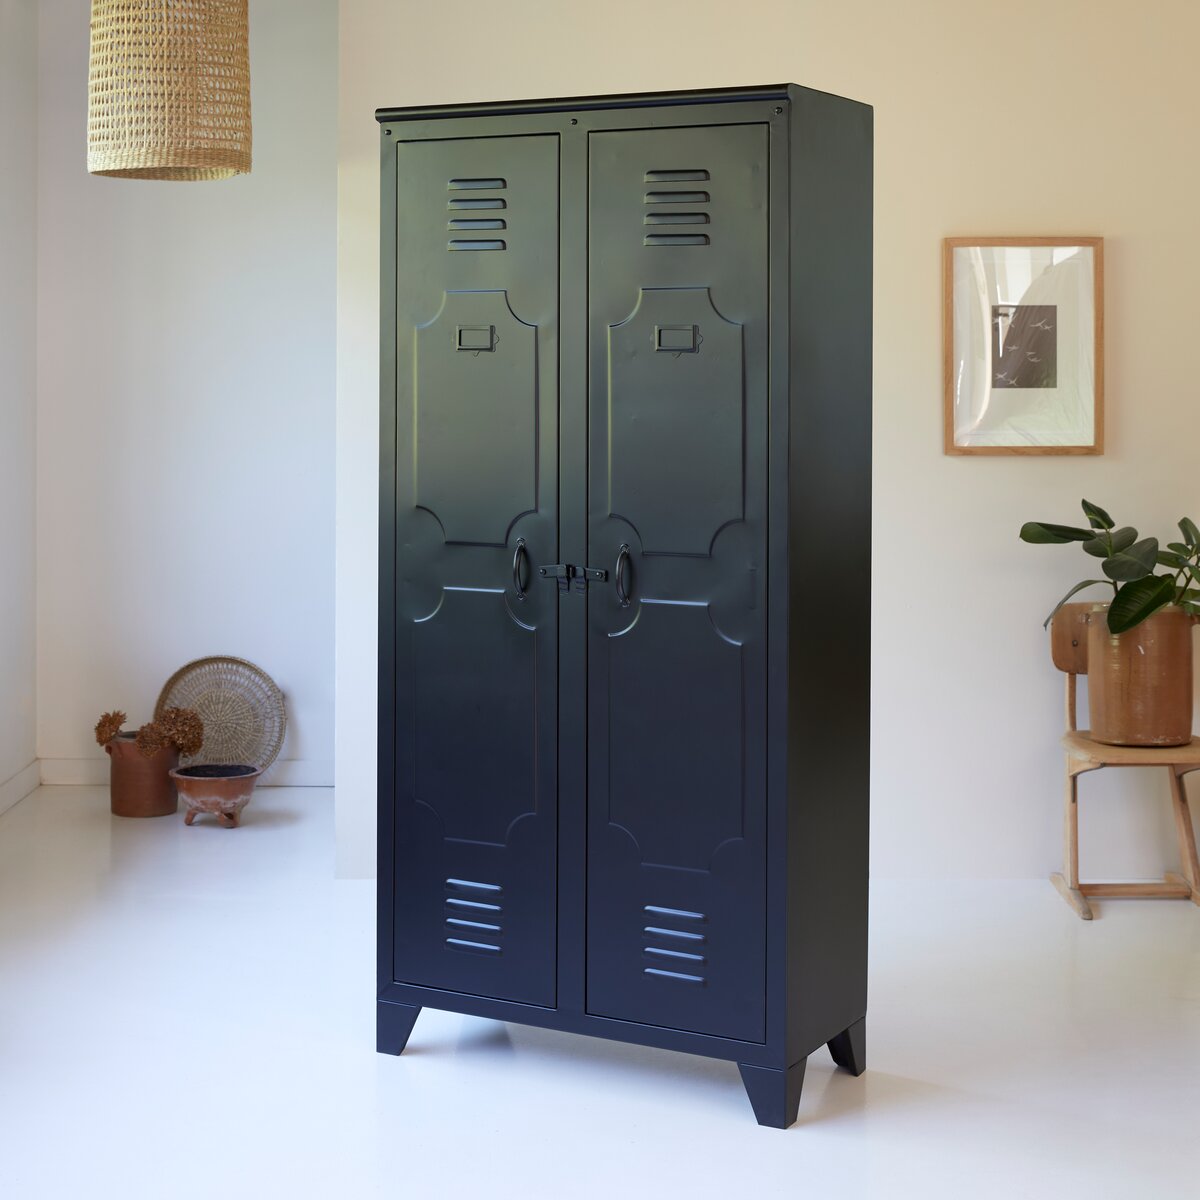 aparador de clasificación 3 puertas Armario de almacenamiento de metal Mordern industrial para salón 120 cm mueble de TV Funda de box.COM 